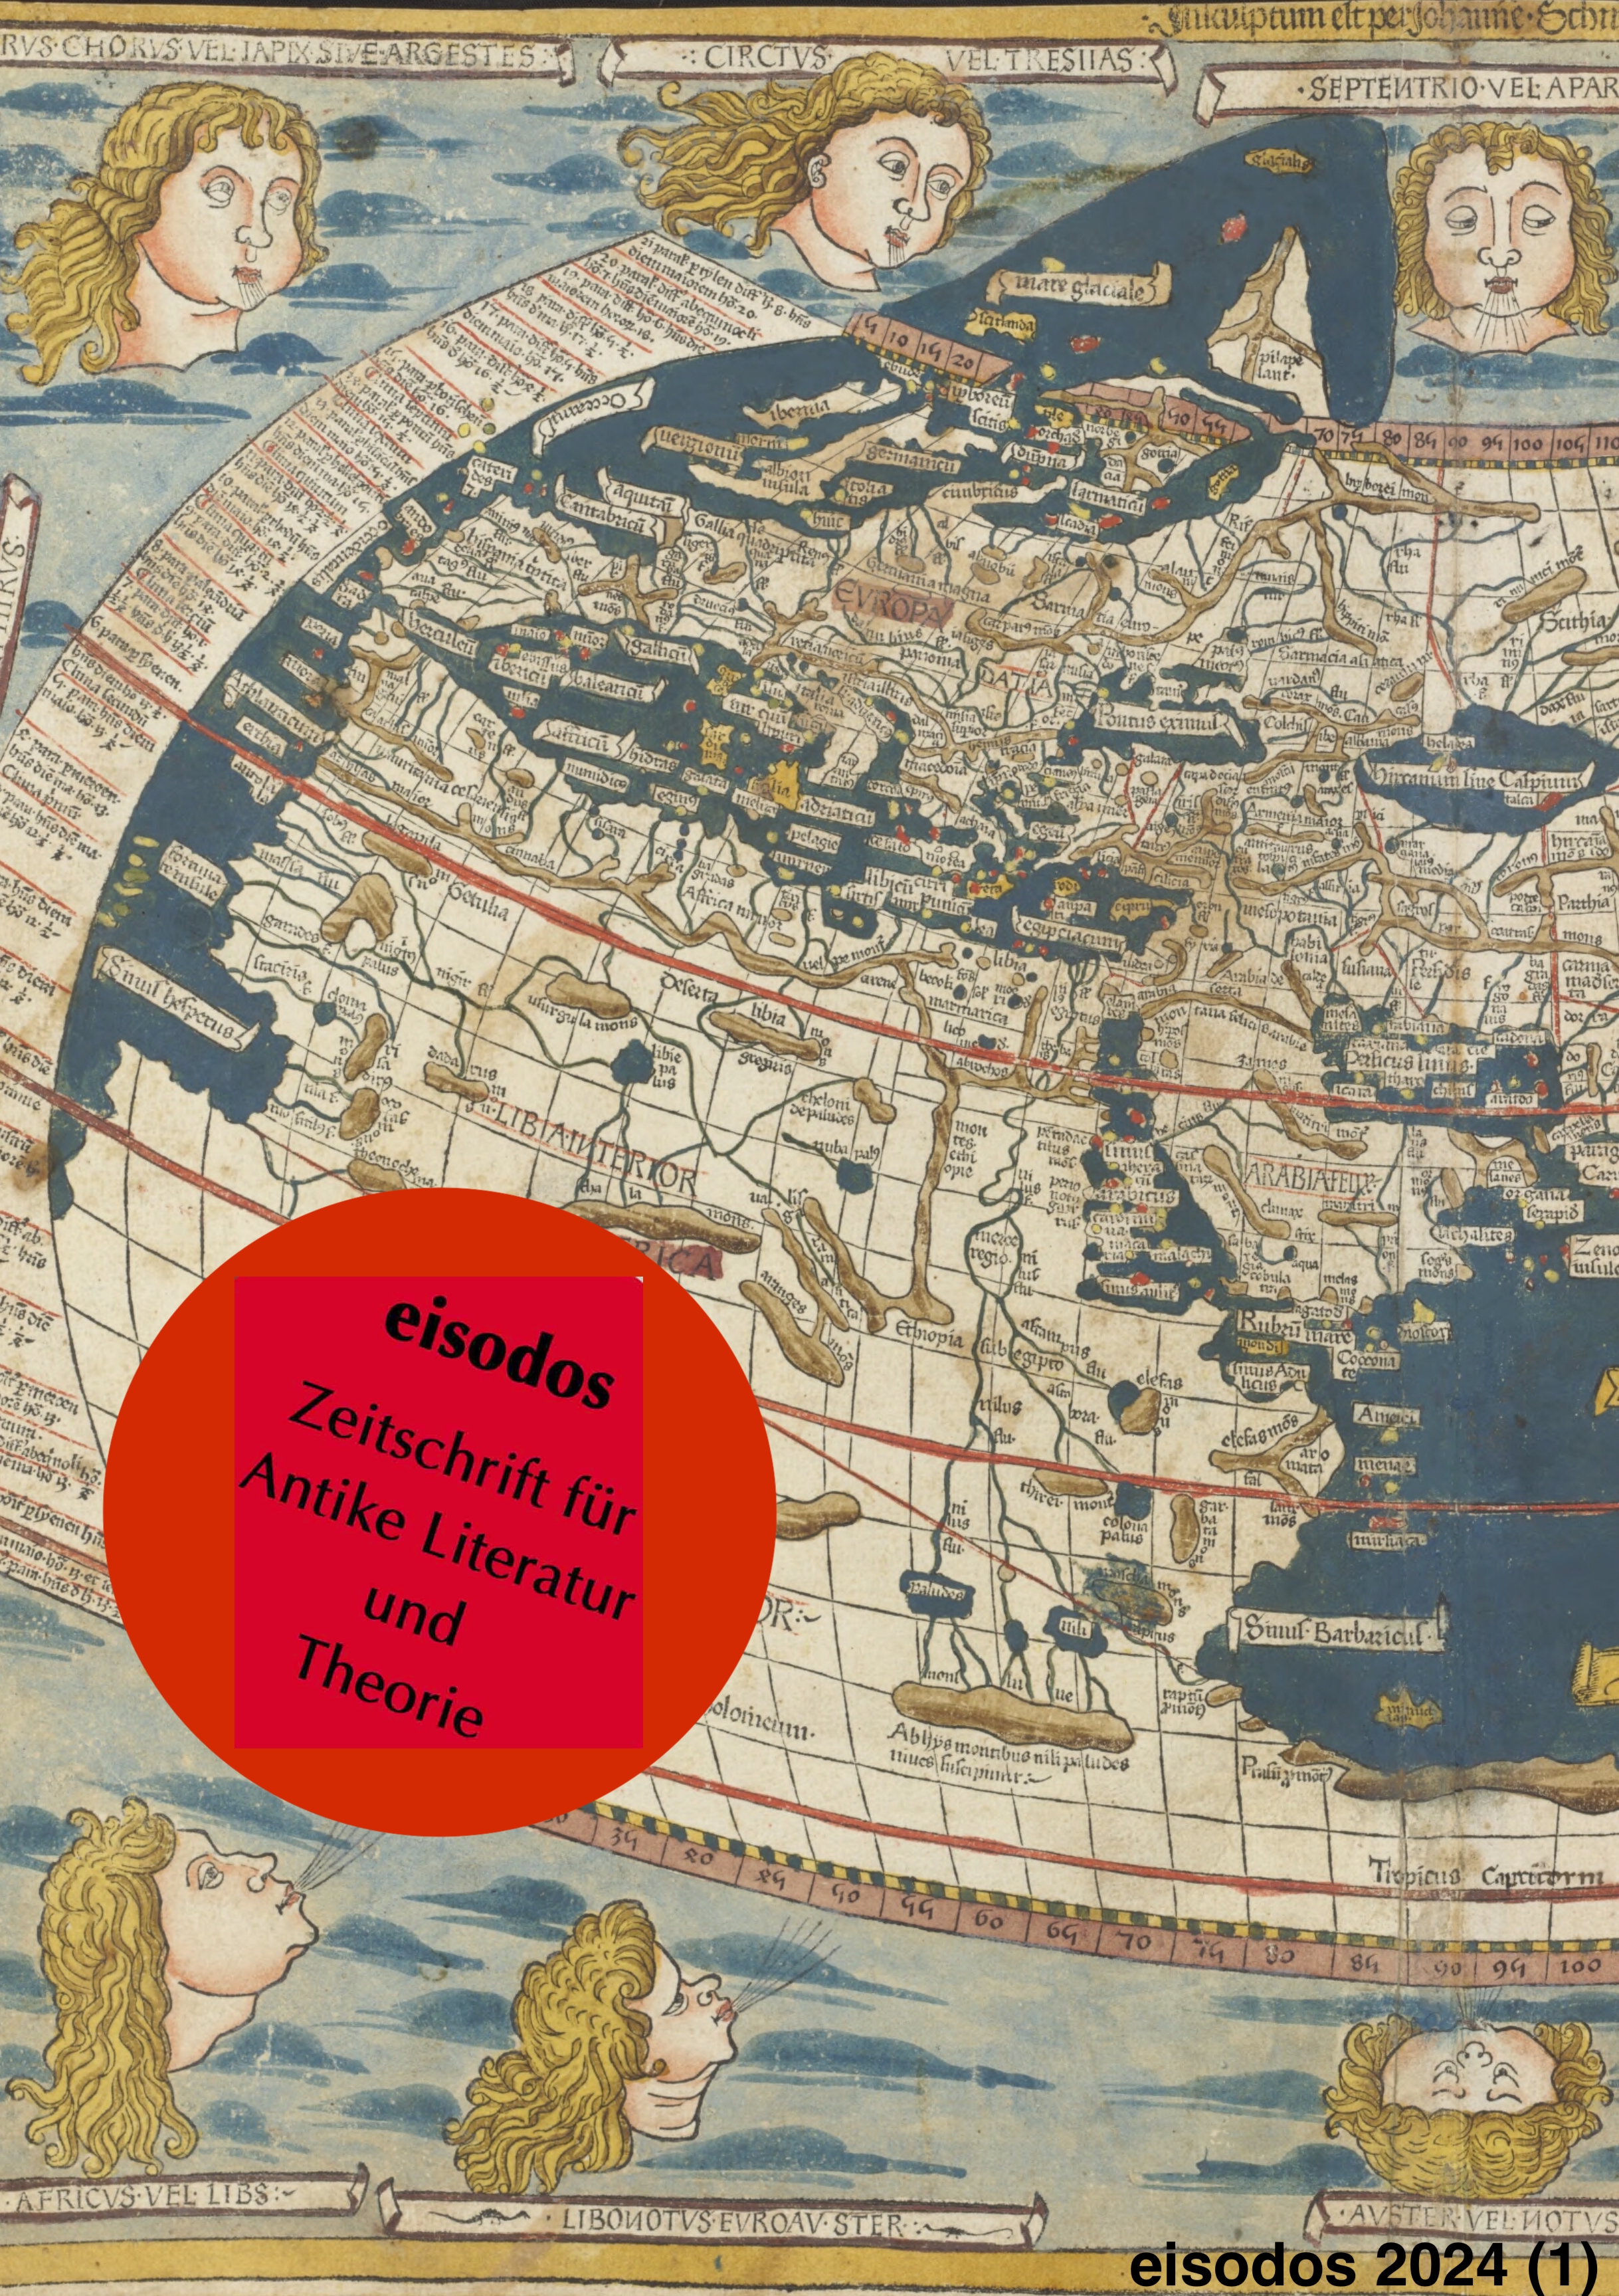 Das eisodos-Titelbild zeigt einen Ausschnitt der sogenannten Ulmer Weltkarte nach Ptolemäus aus dem Jahr 1482. Quelle: National Library of Australia, Canberra.